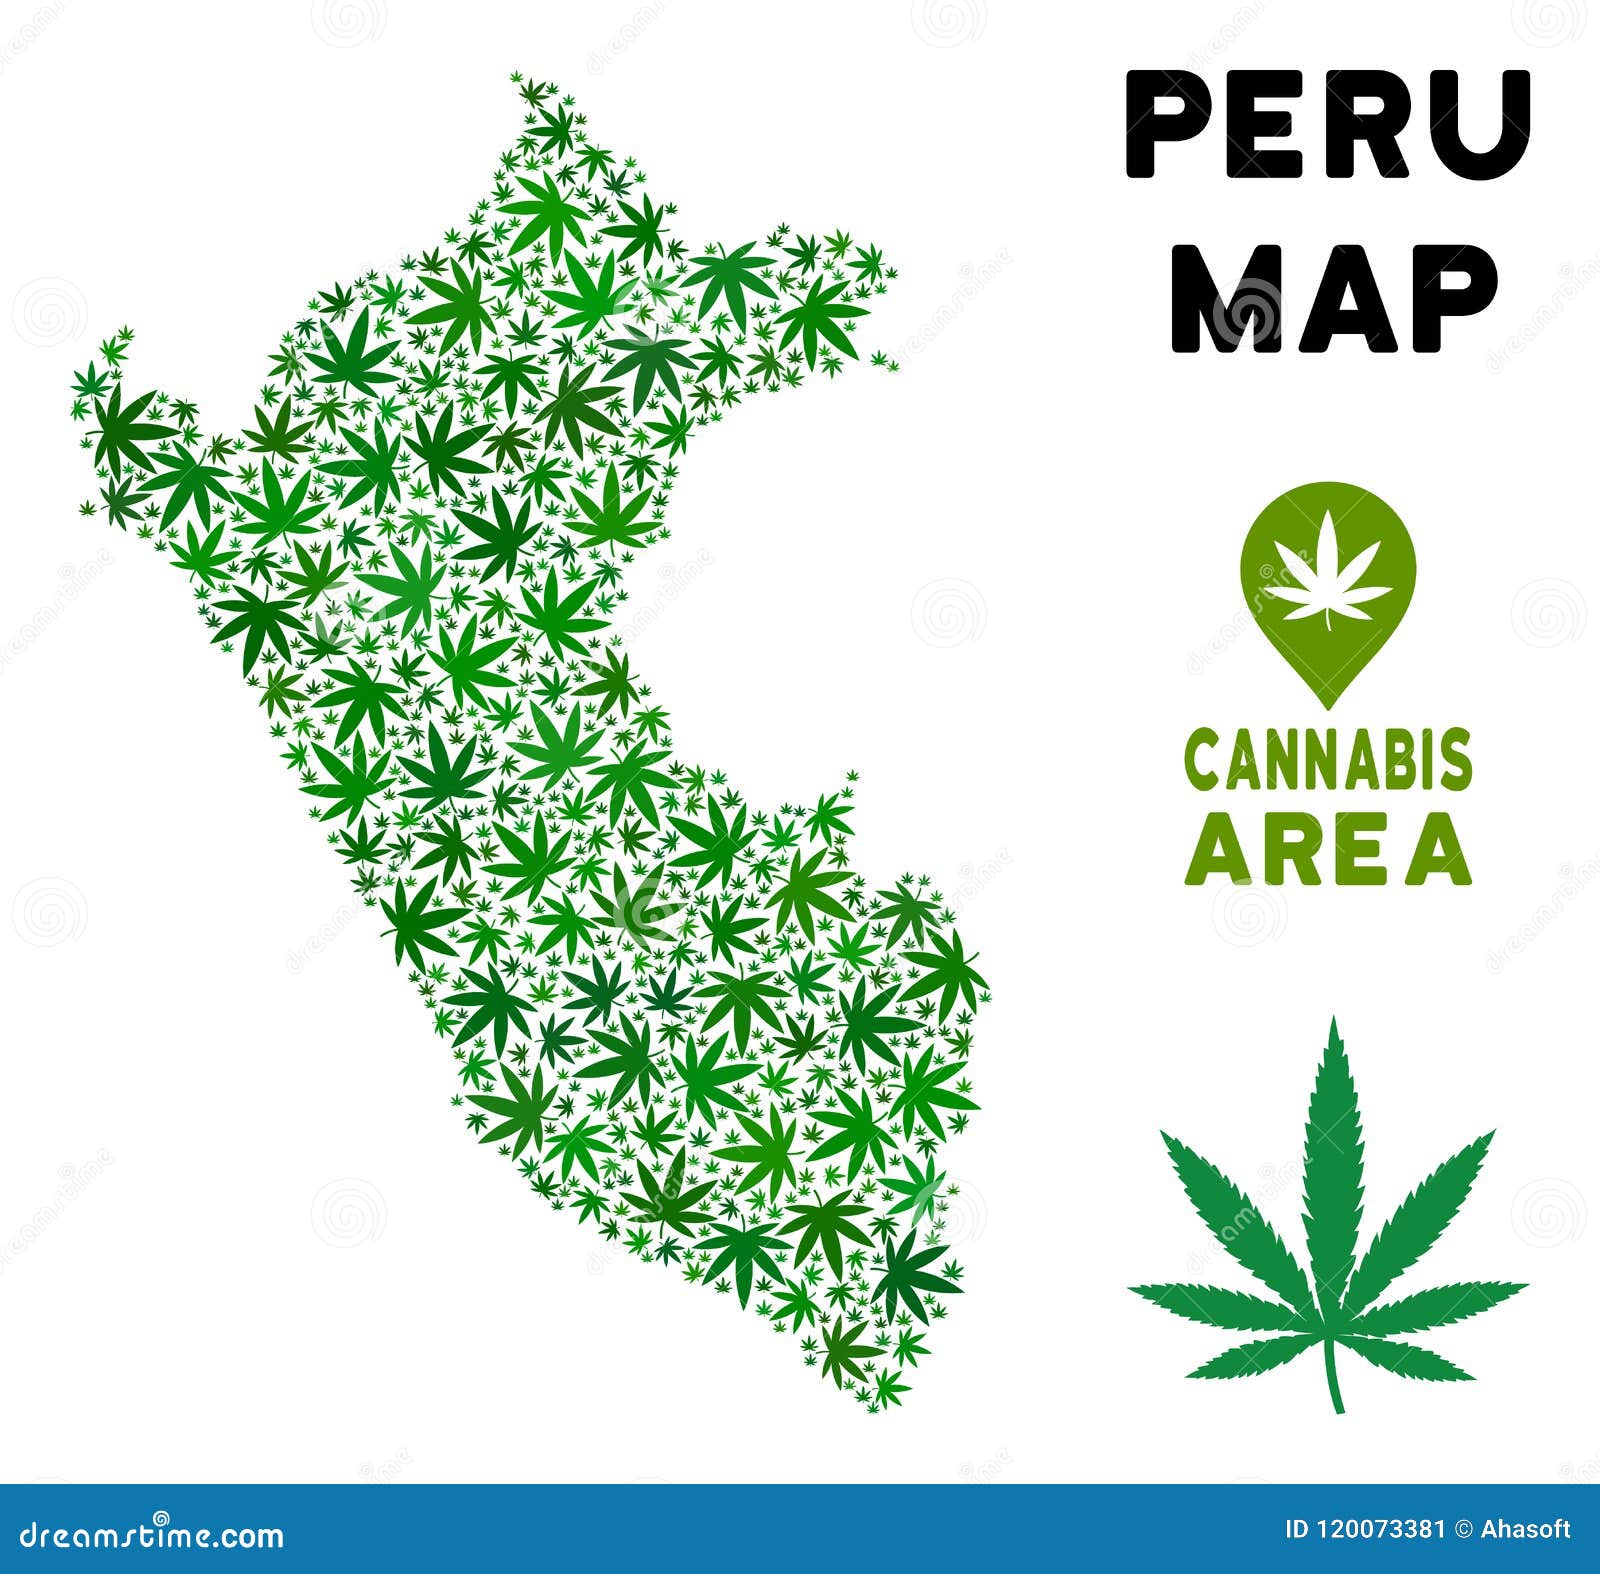 Перу марихуана марихуана их организма